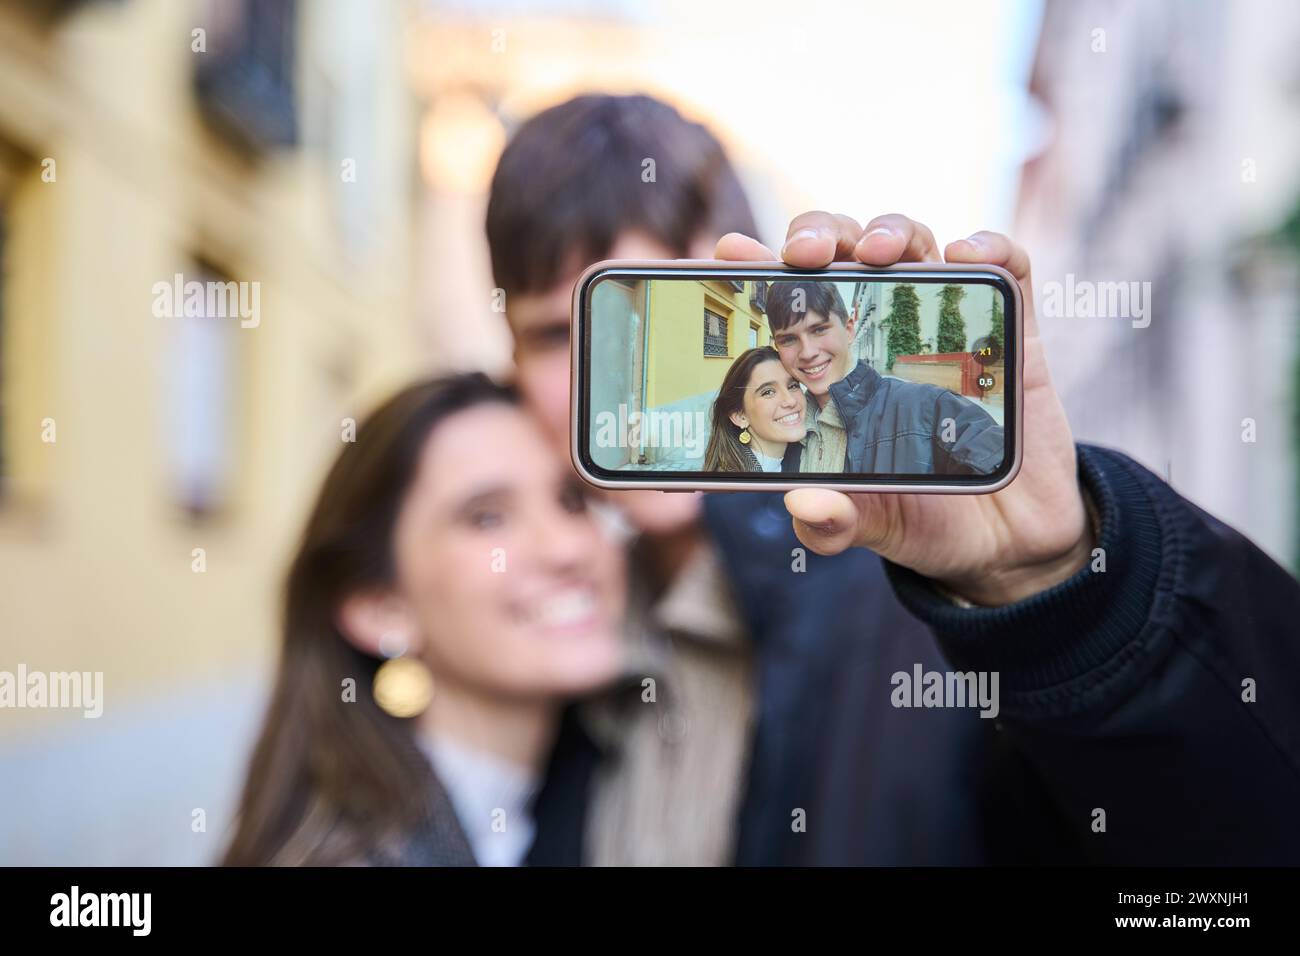 Junge Mann und Frau Paar lächeln zuversichtlich machen Selfie mit dem Smartphone auf der Straße Stockfoto